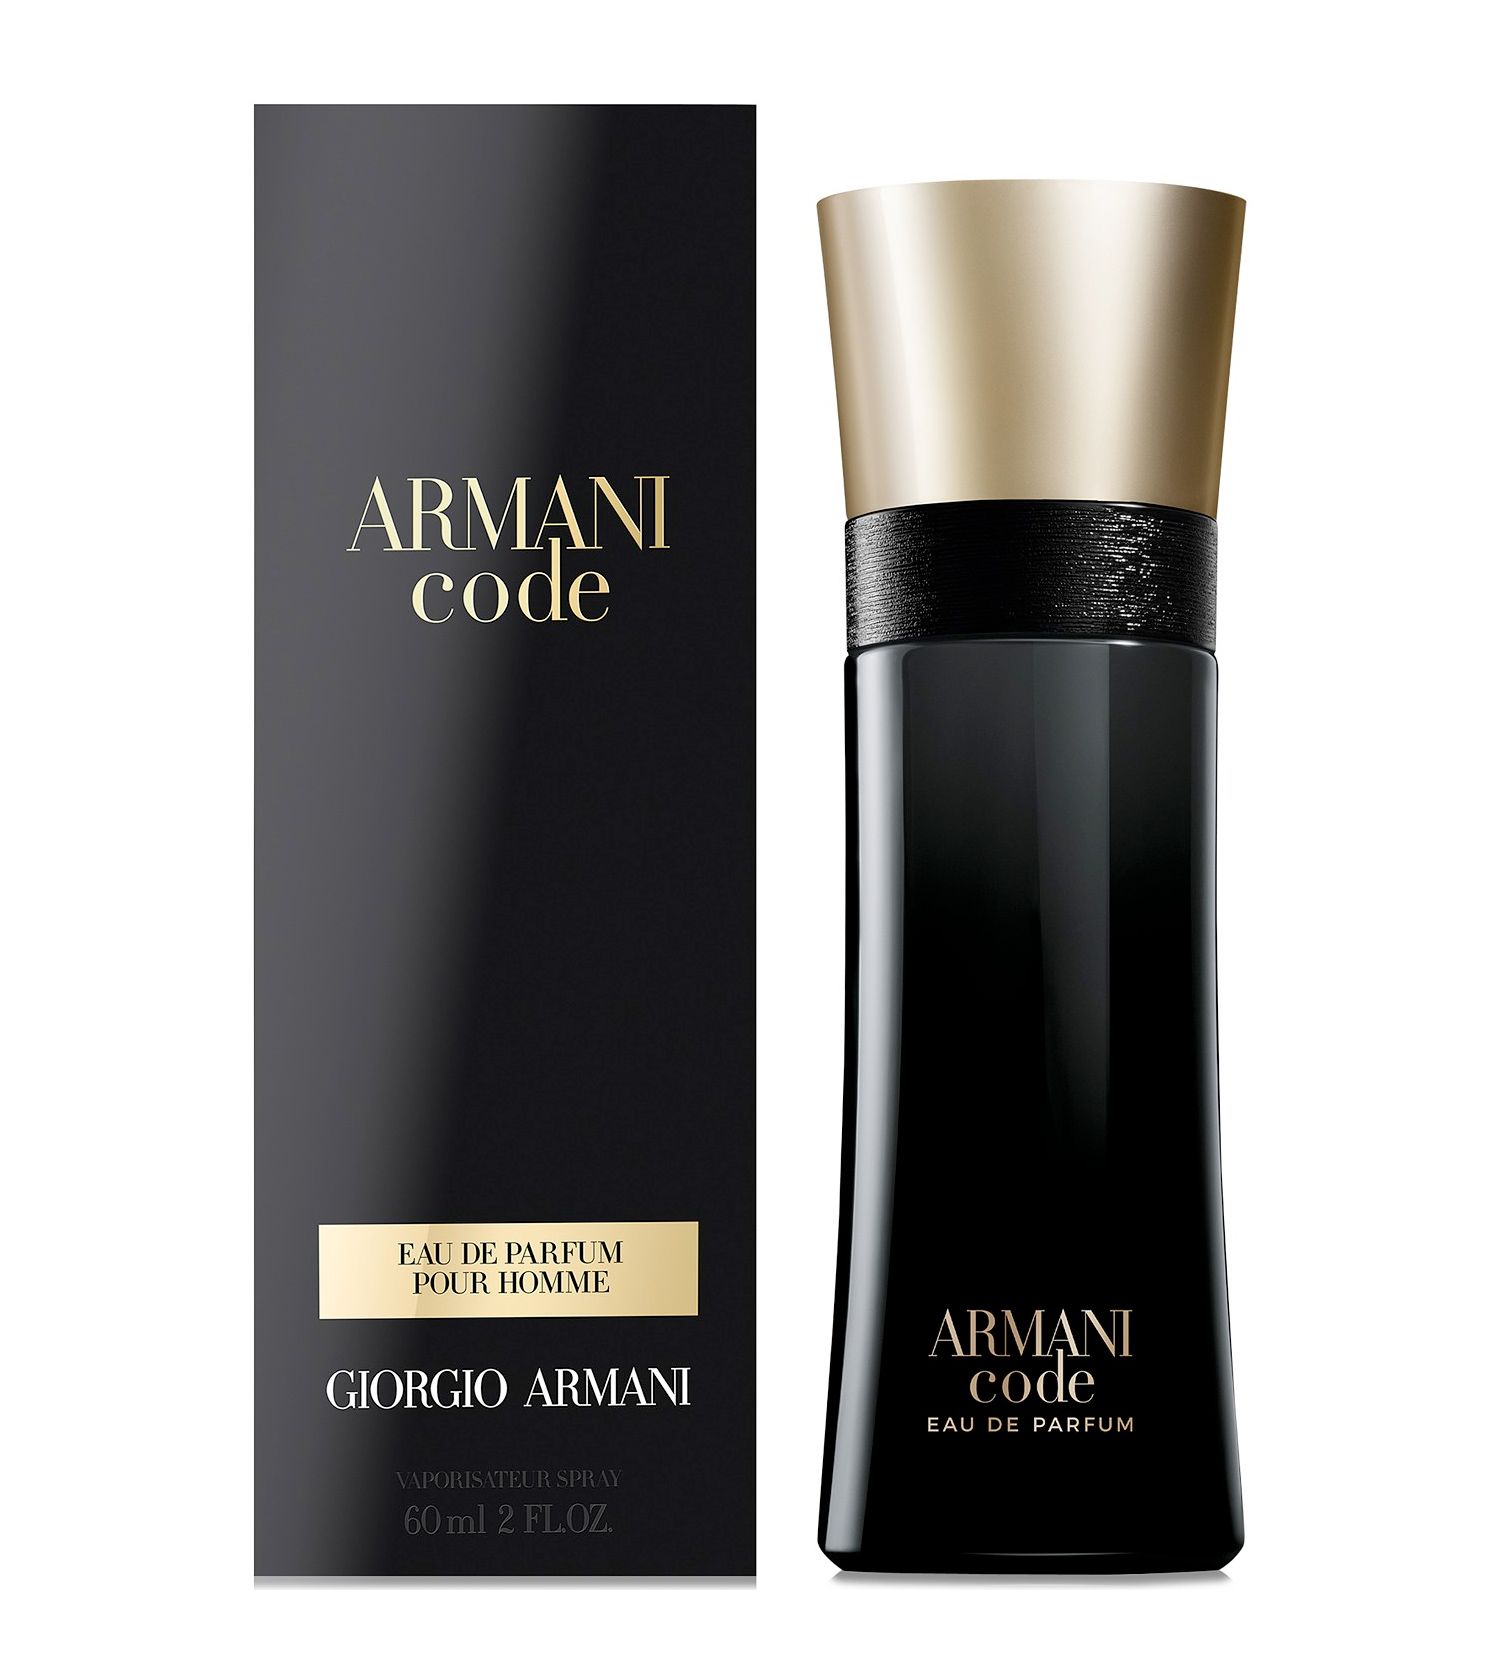 Armani Code Eau de Parfum Armani Cologne un nouveau parfum